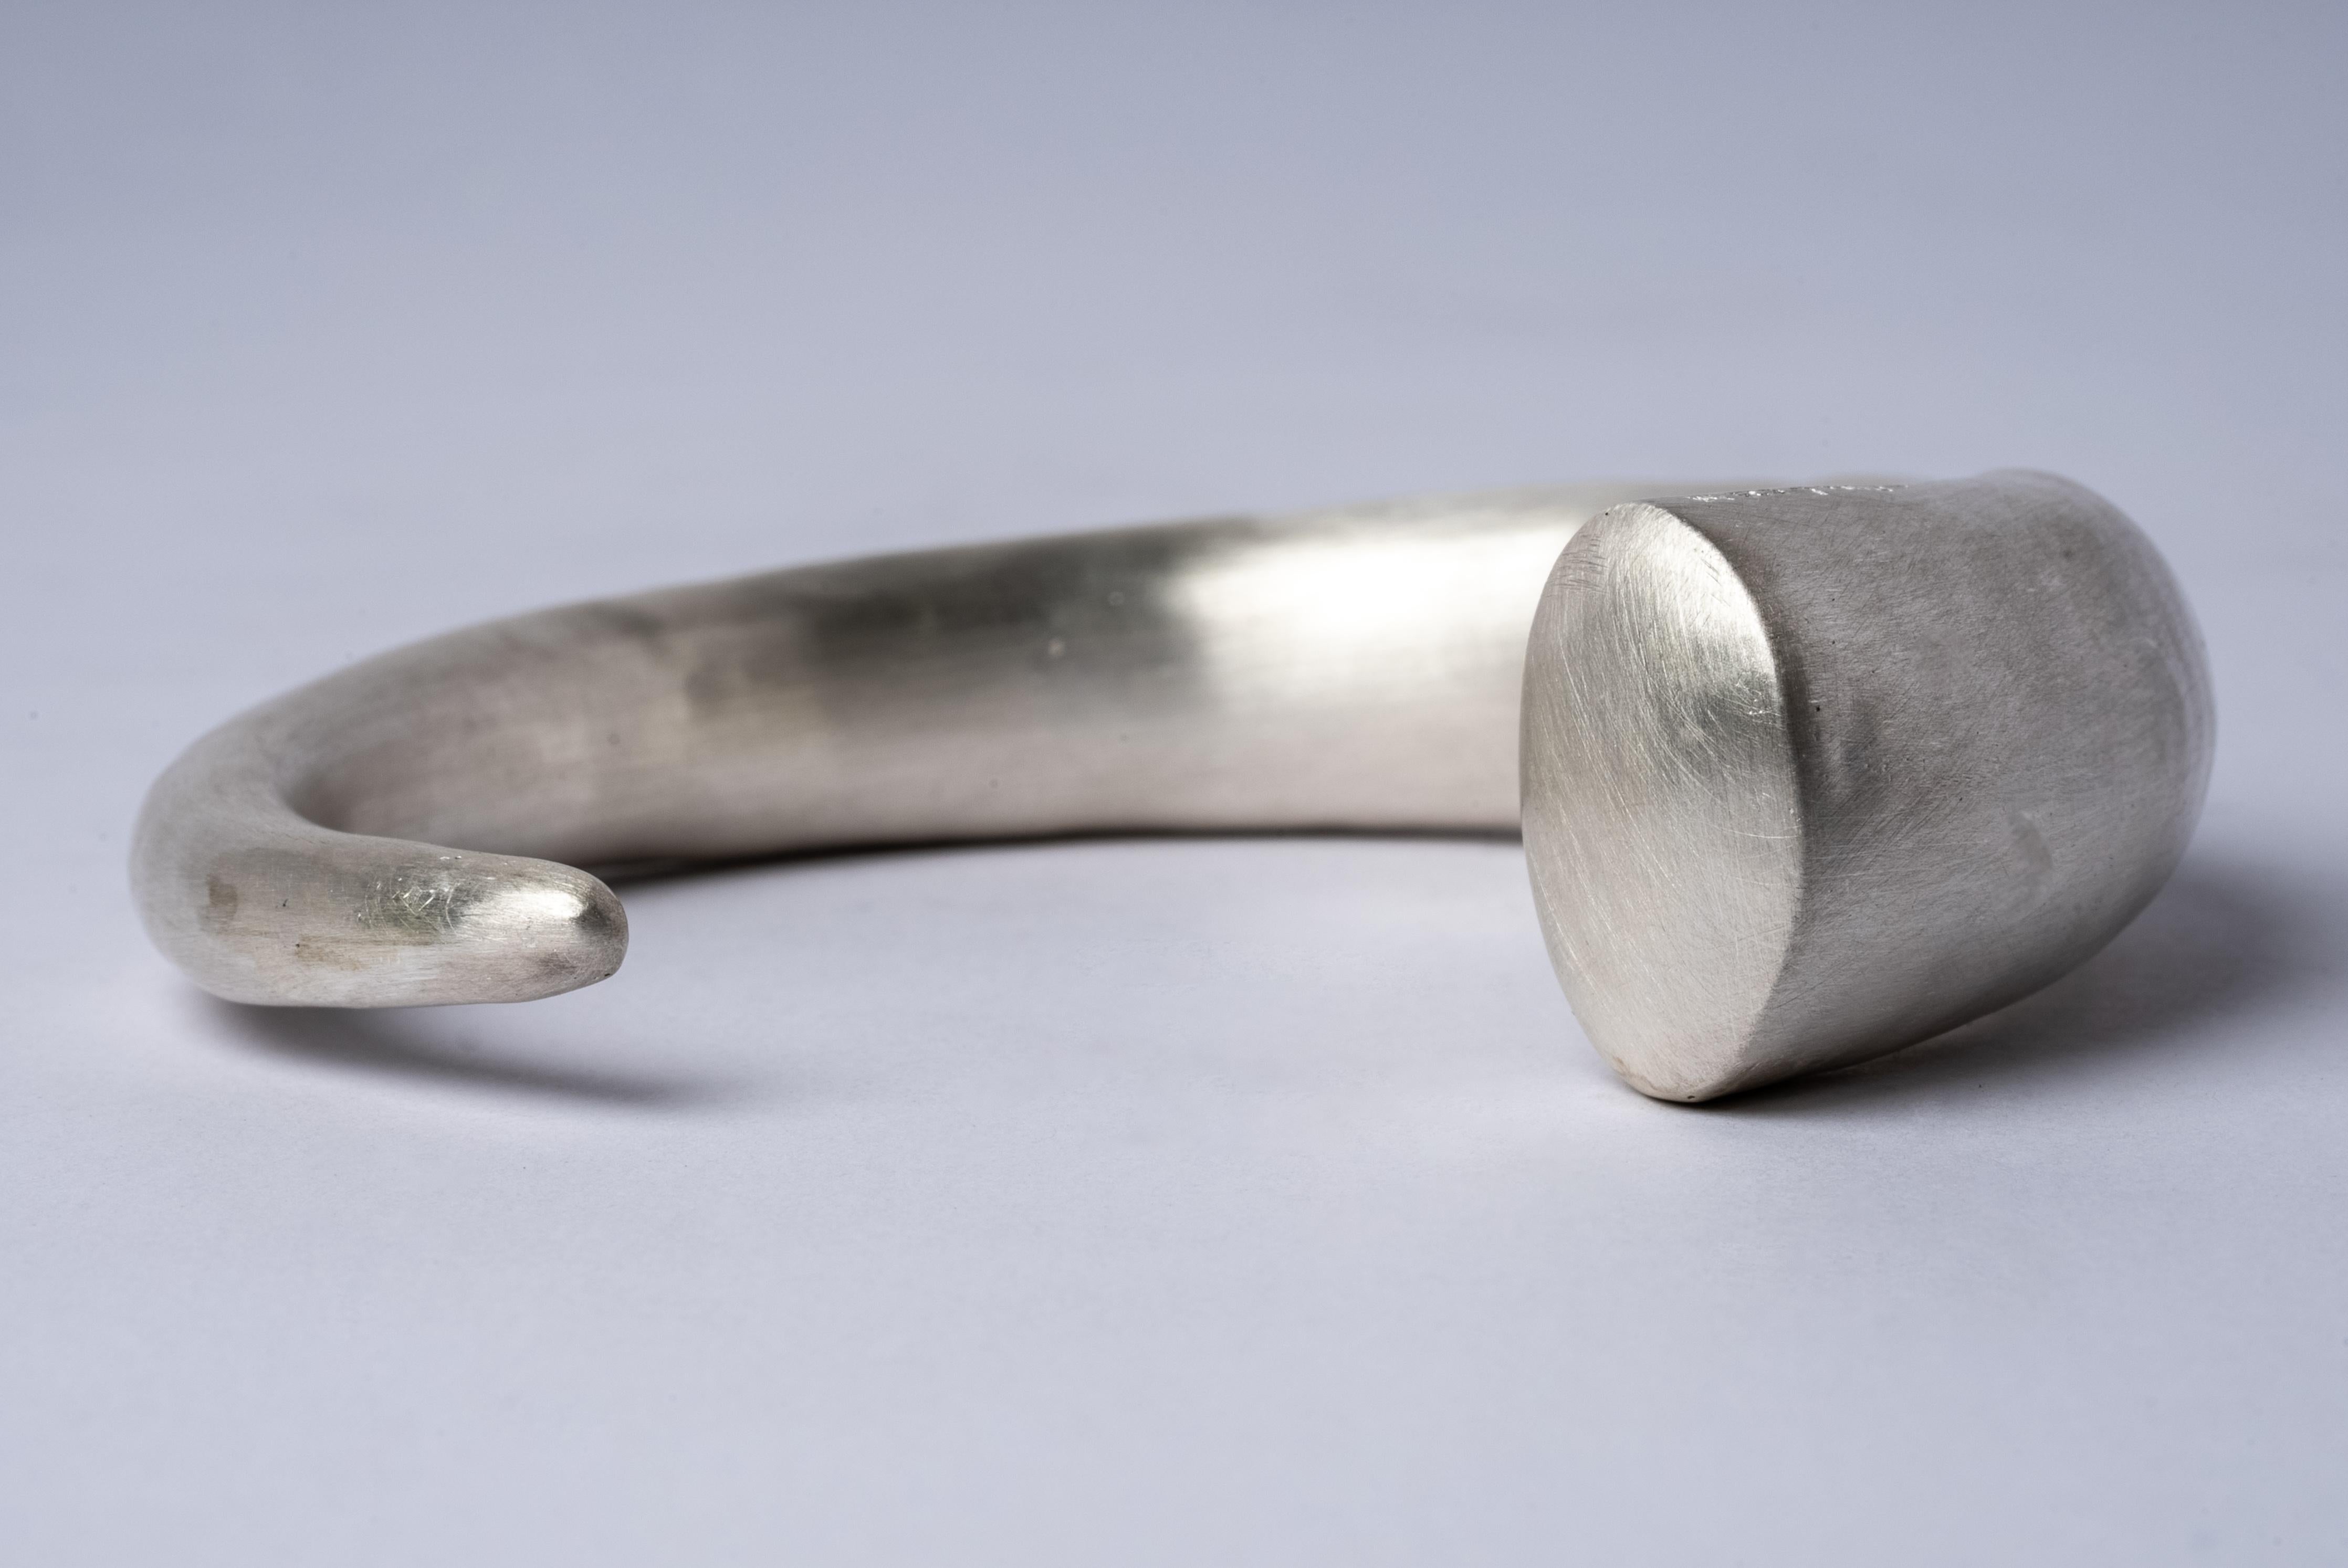 Horn-Armband aus mattem Sterlingsilber. Dieses Stück ist zu 100 % von Hand aus Metallblech gefertigt, in Abschnitte geschnitten und zusammengelötet, um die hohle dreidimensionale Form zu bilden. Wenn es sich um Sterlingsilber handelt, wird das